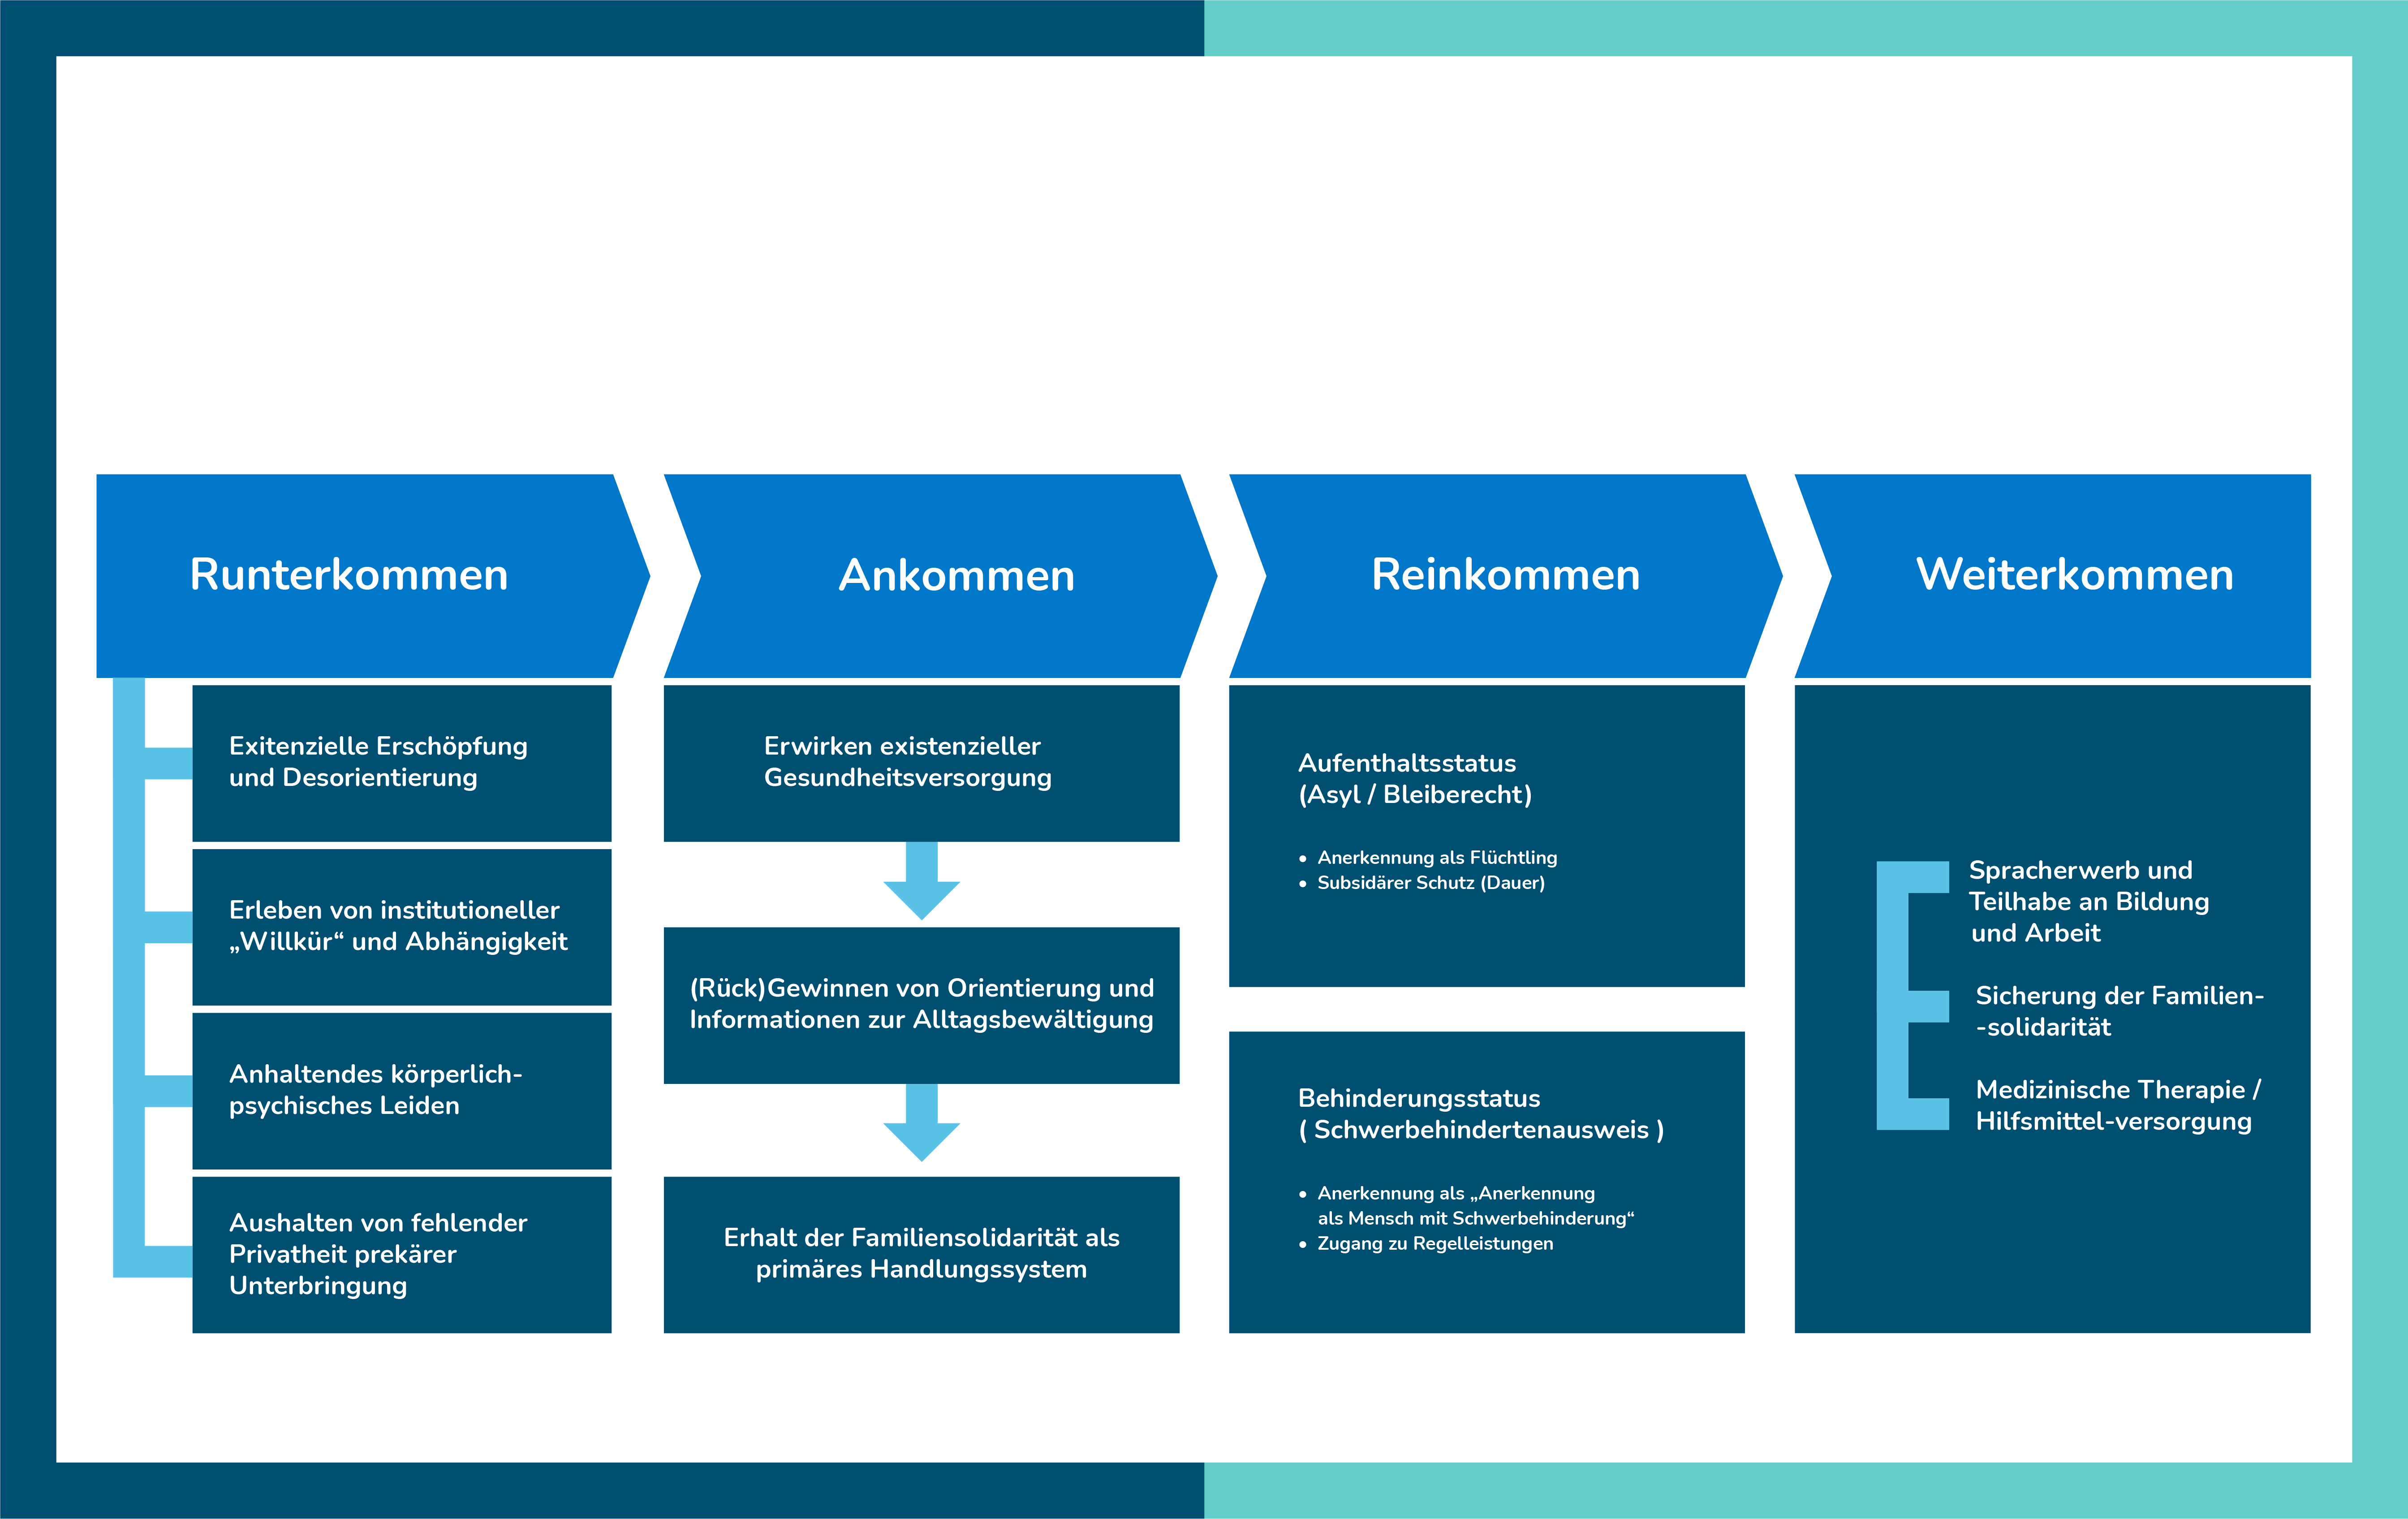 Das Bild zeigt eine blaue Grafik mit vier Säulen: Runterkommen, Ankommen, Reinkommen, Weiterkommen und stellt die Punkte dieser Phasen stichwortartig dar.